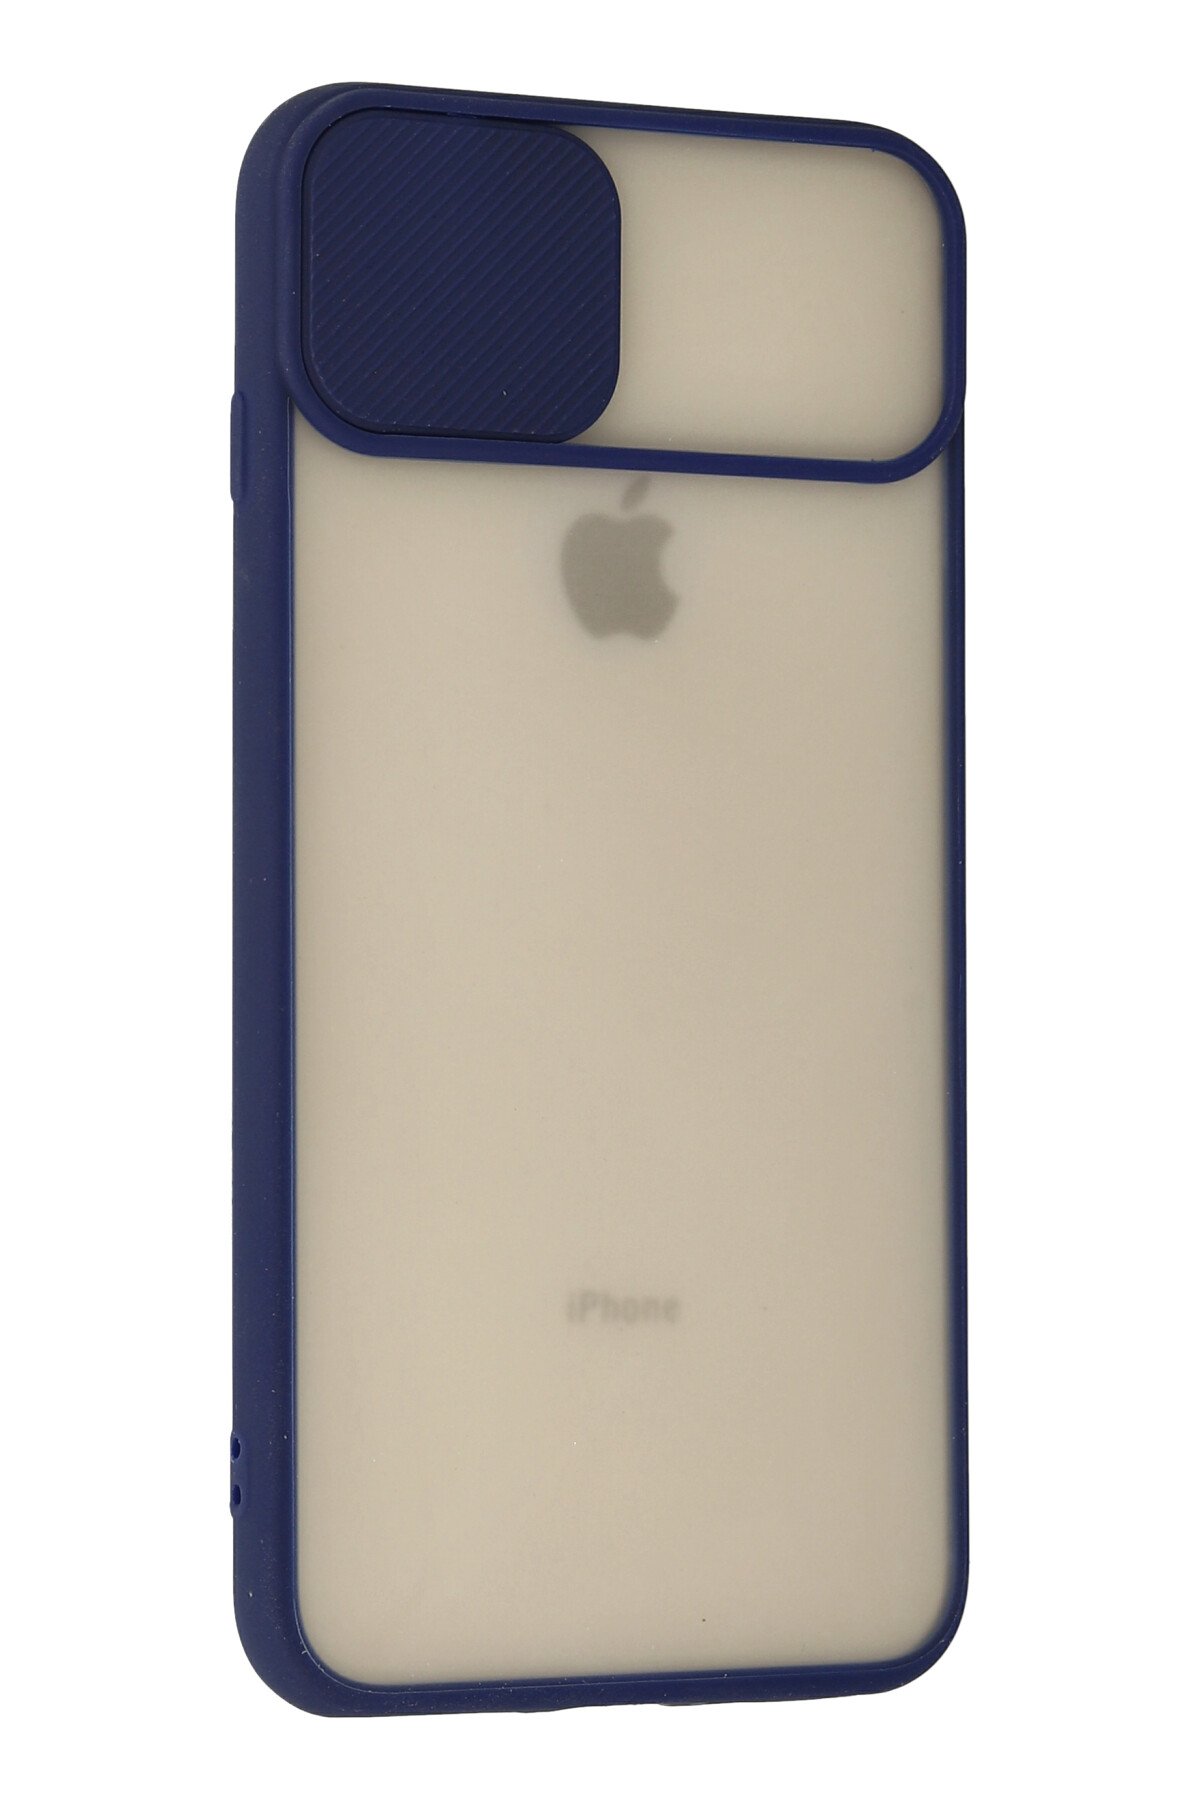 Newface iPhone 7 Plus Kılıf Coco Deri Standlı Kapak - Beyaz